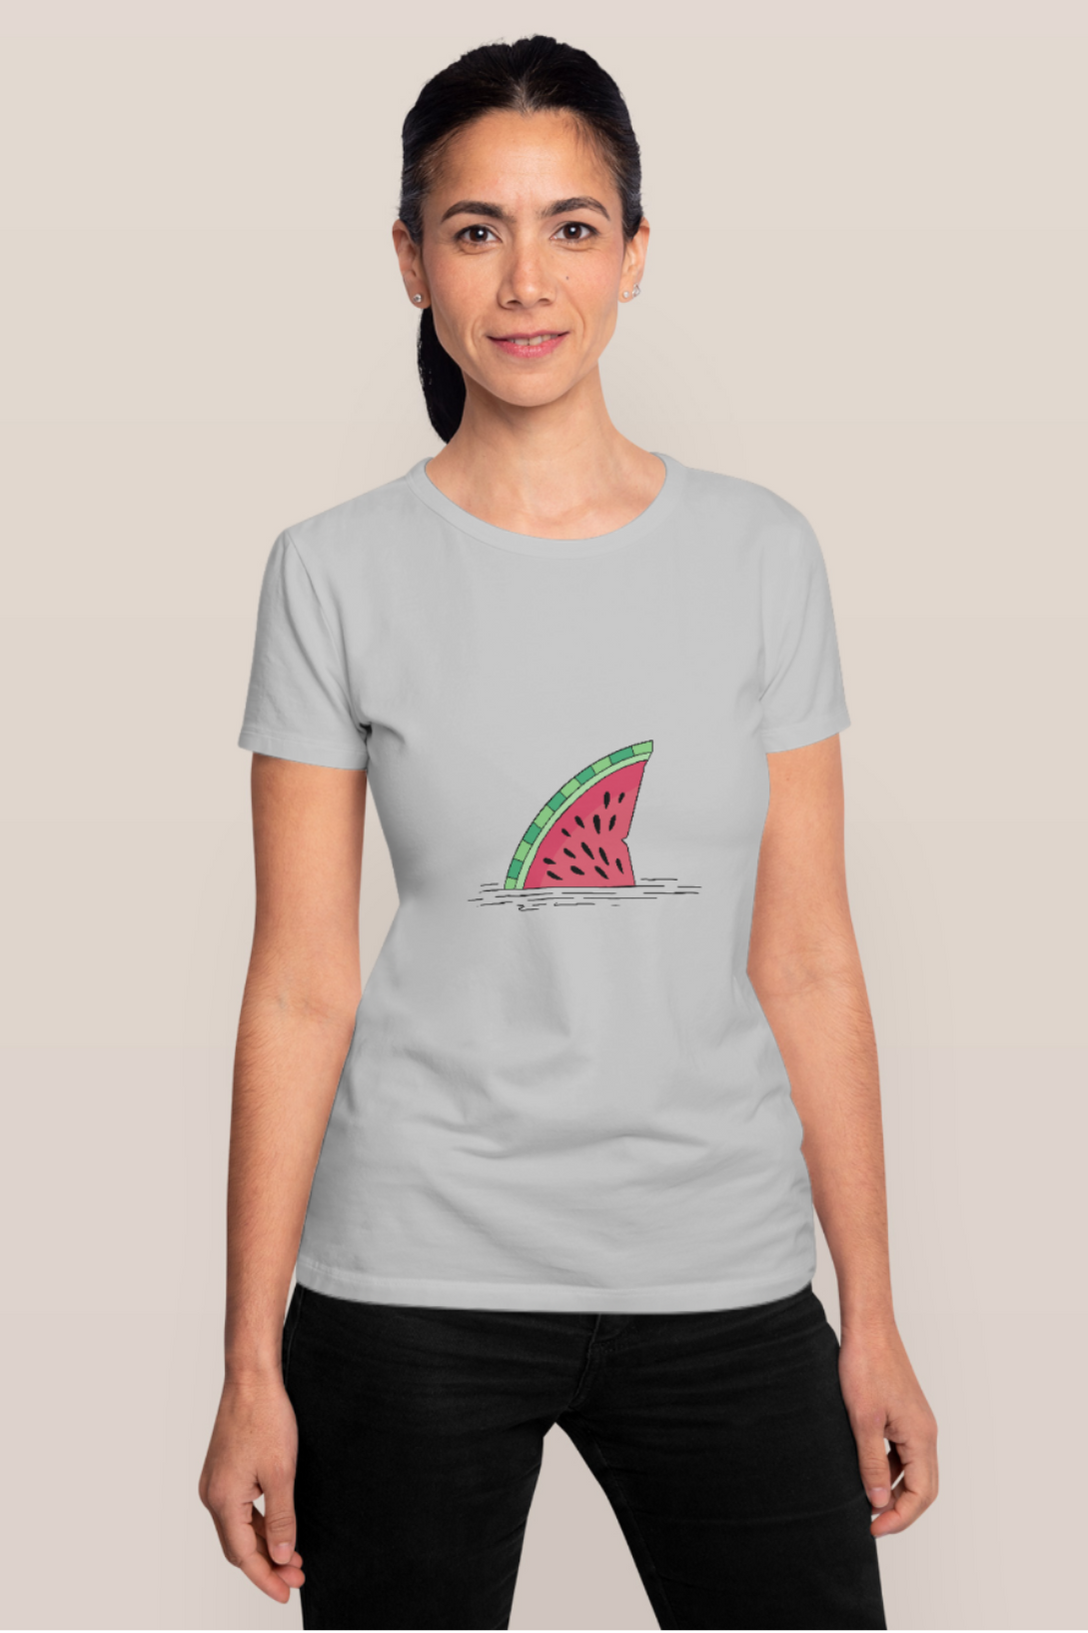 Watermelon Shark Fin Printed T-Shirt For Women - WowWaves - 11